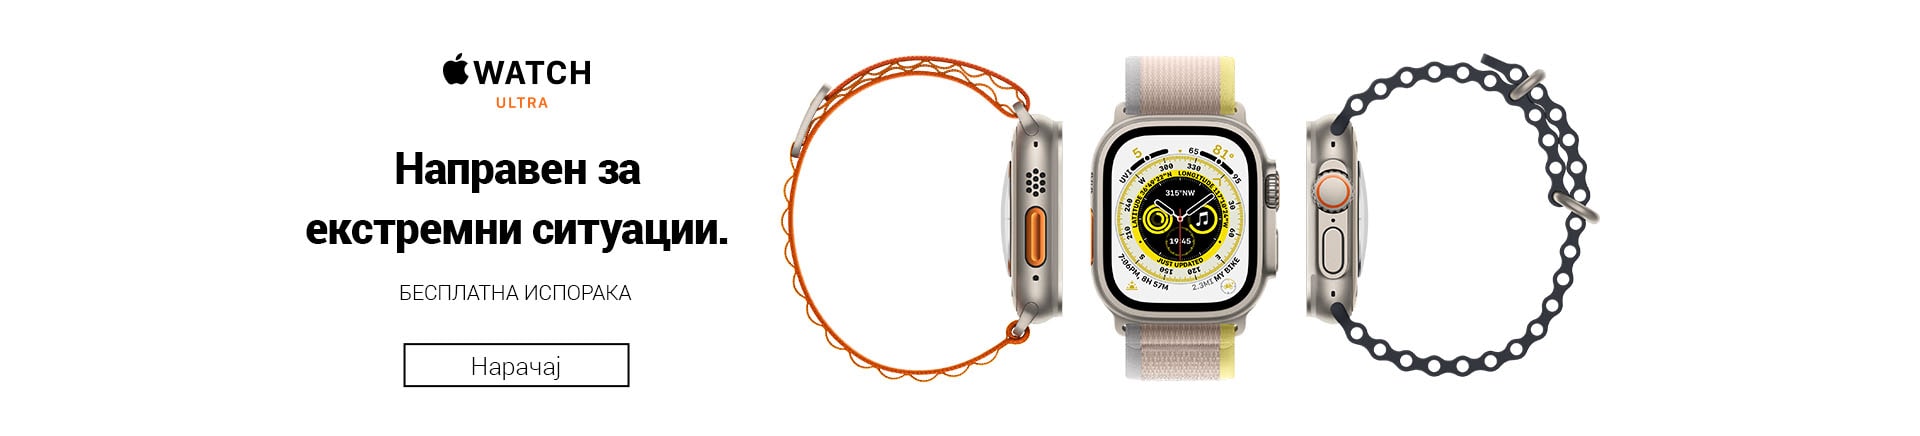 MK_Apple Watch ultraMOBILE 380 X 436-min.jpg